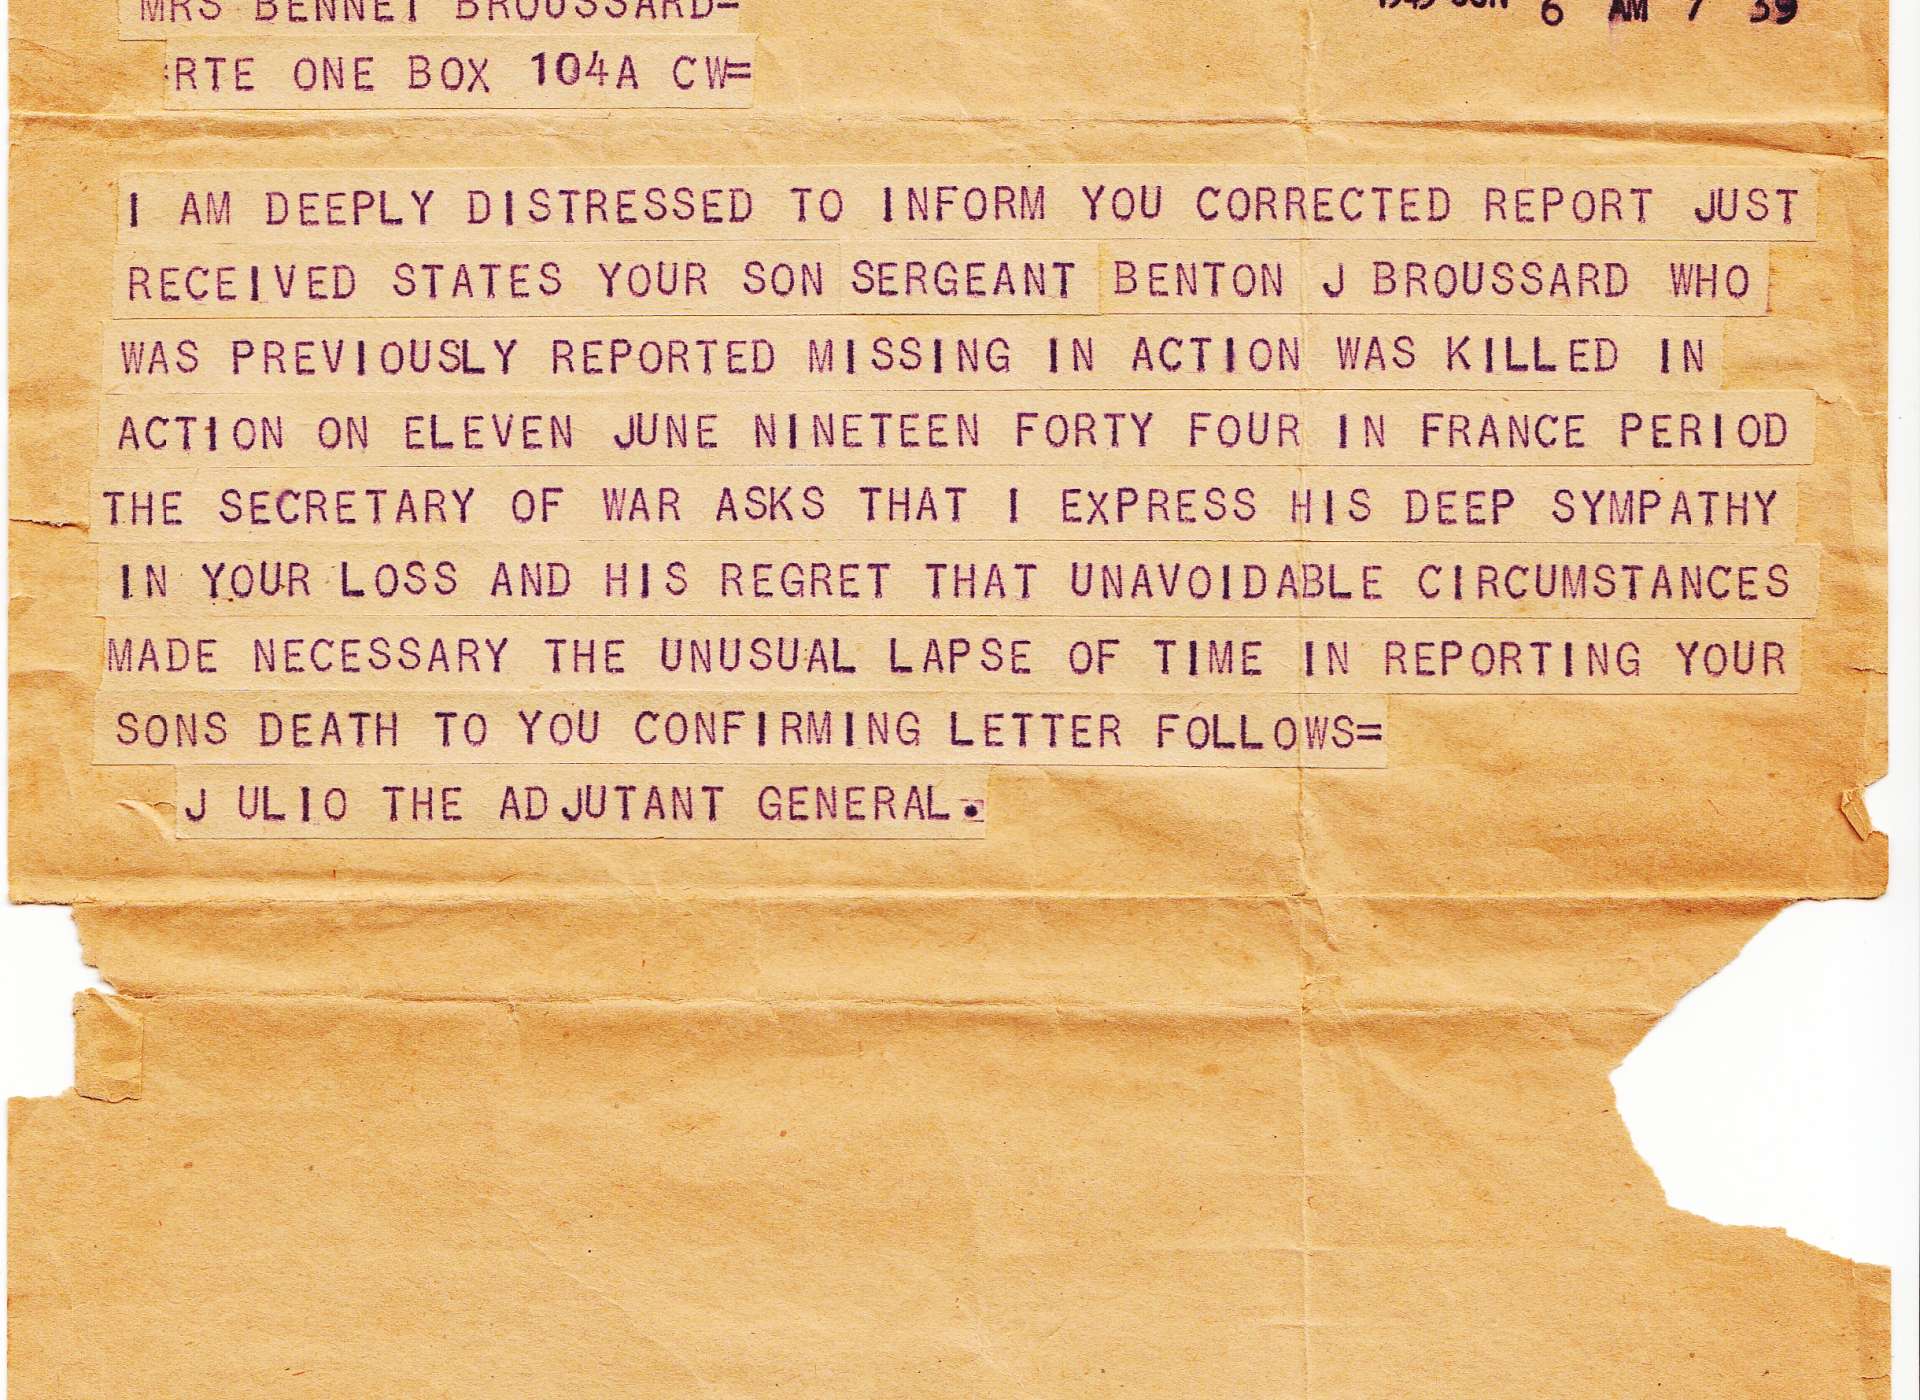 broussard death telegram